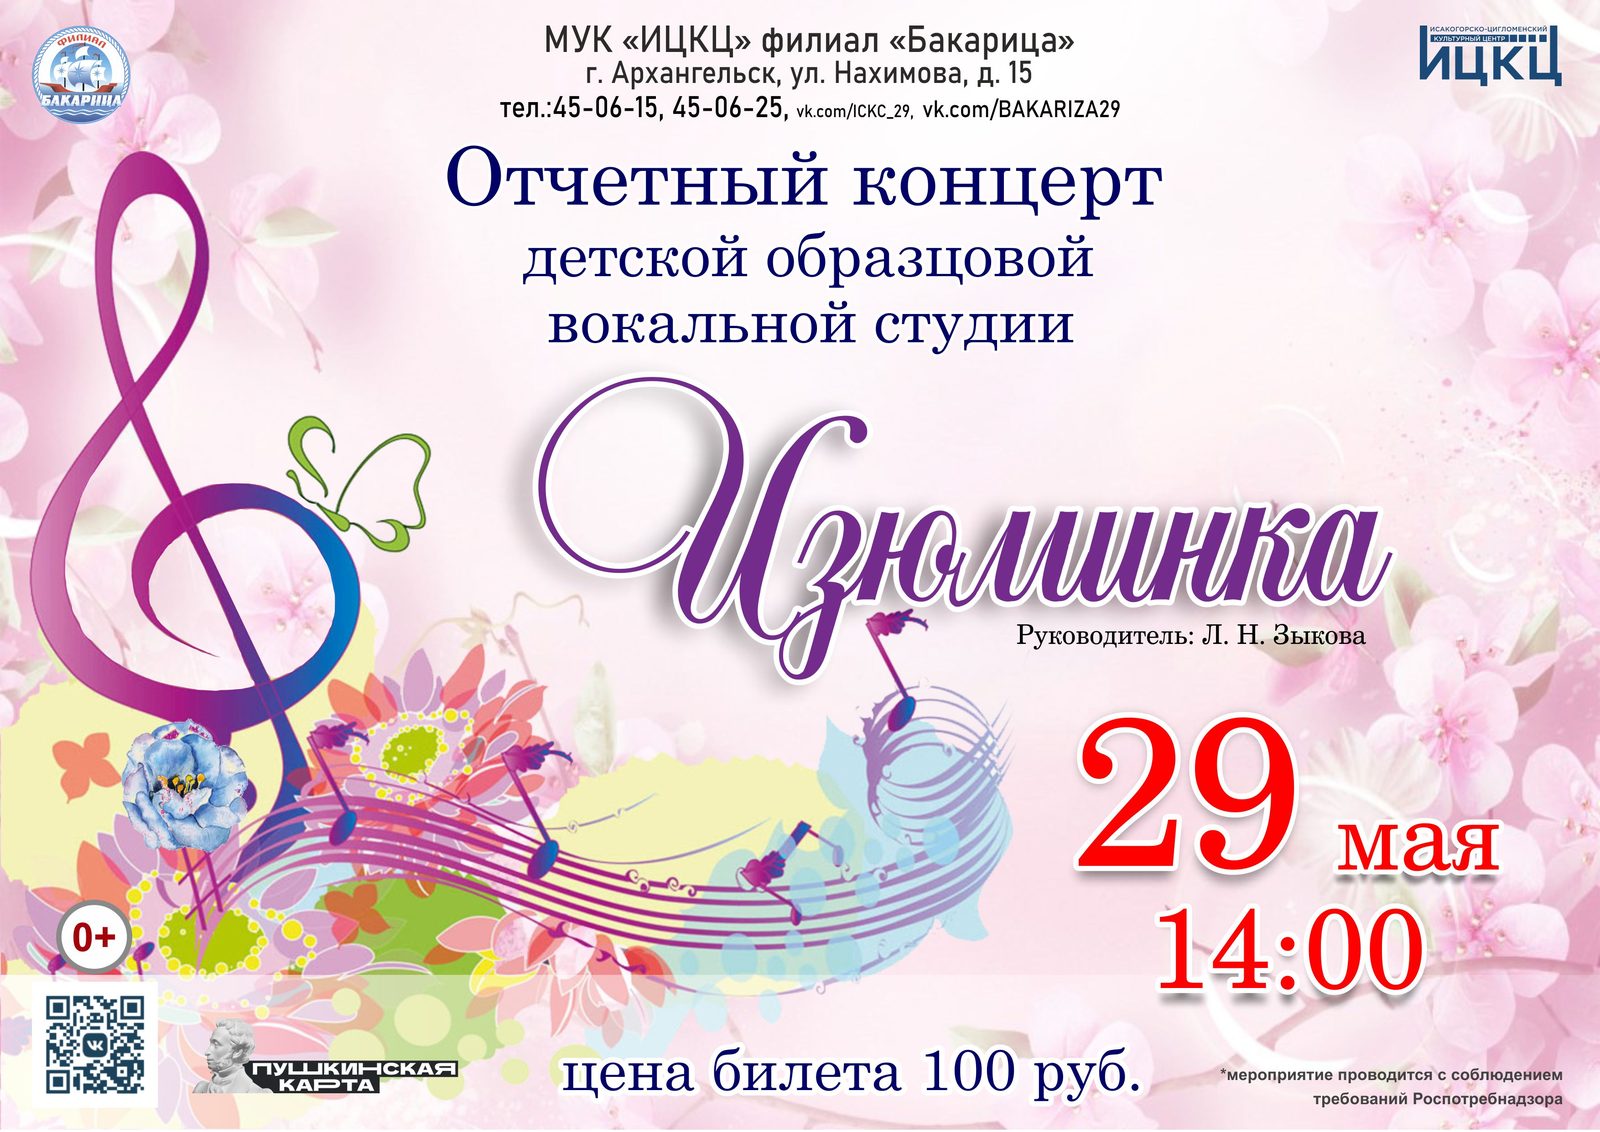 Отчётный концерт детской образцовой вокальной студии «Изюминка»